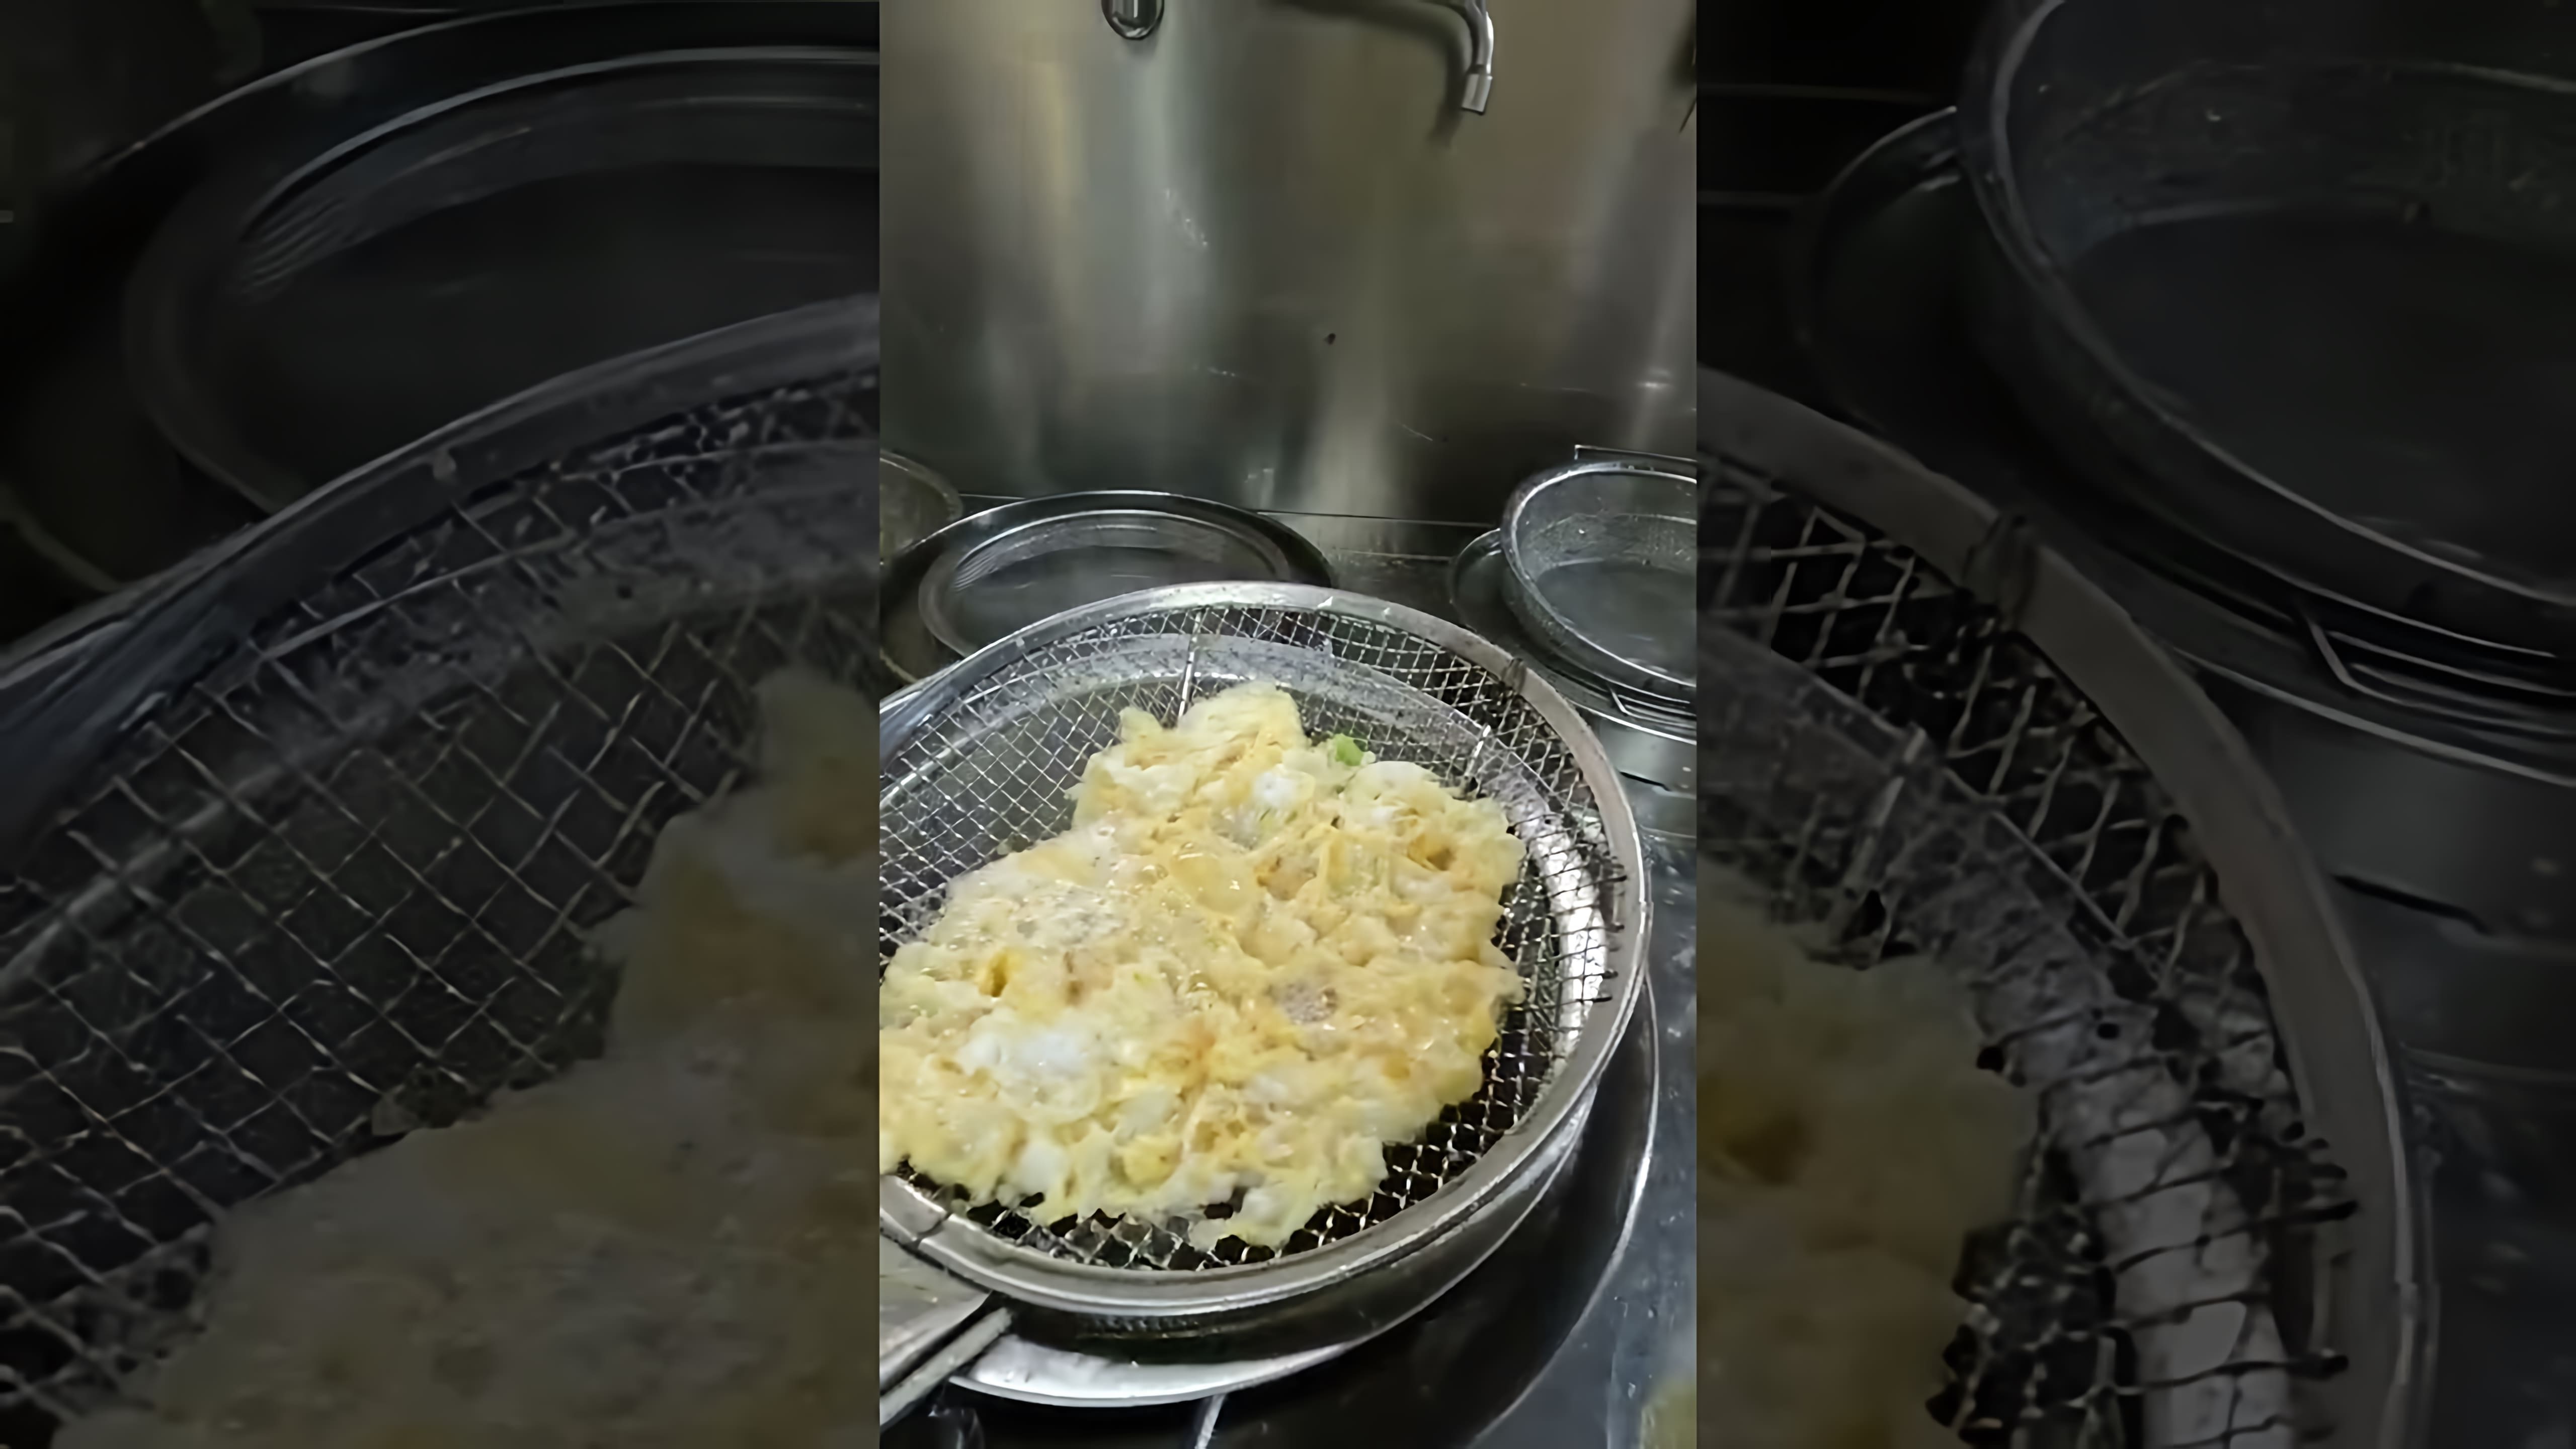 "Нашумевшие яйца с помидорами: лучший рецепт приготовления омлета" - это видео-ролик, который демонстрирует процесс приготовления вкусного и питательного блюда - омлета с помидорами